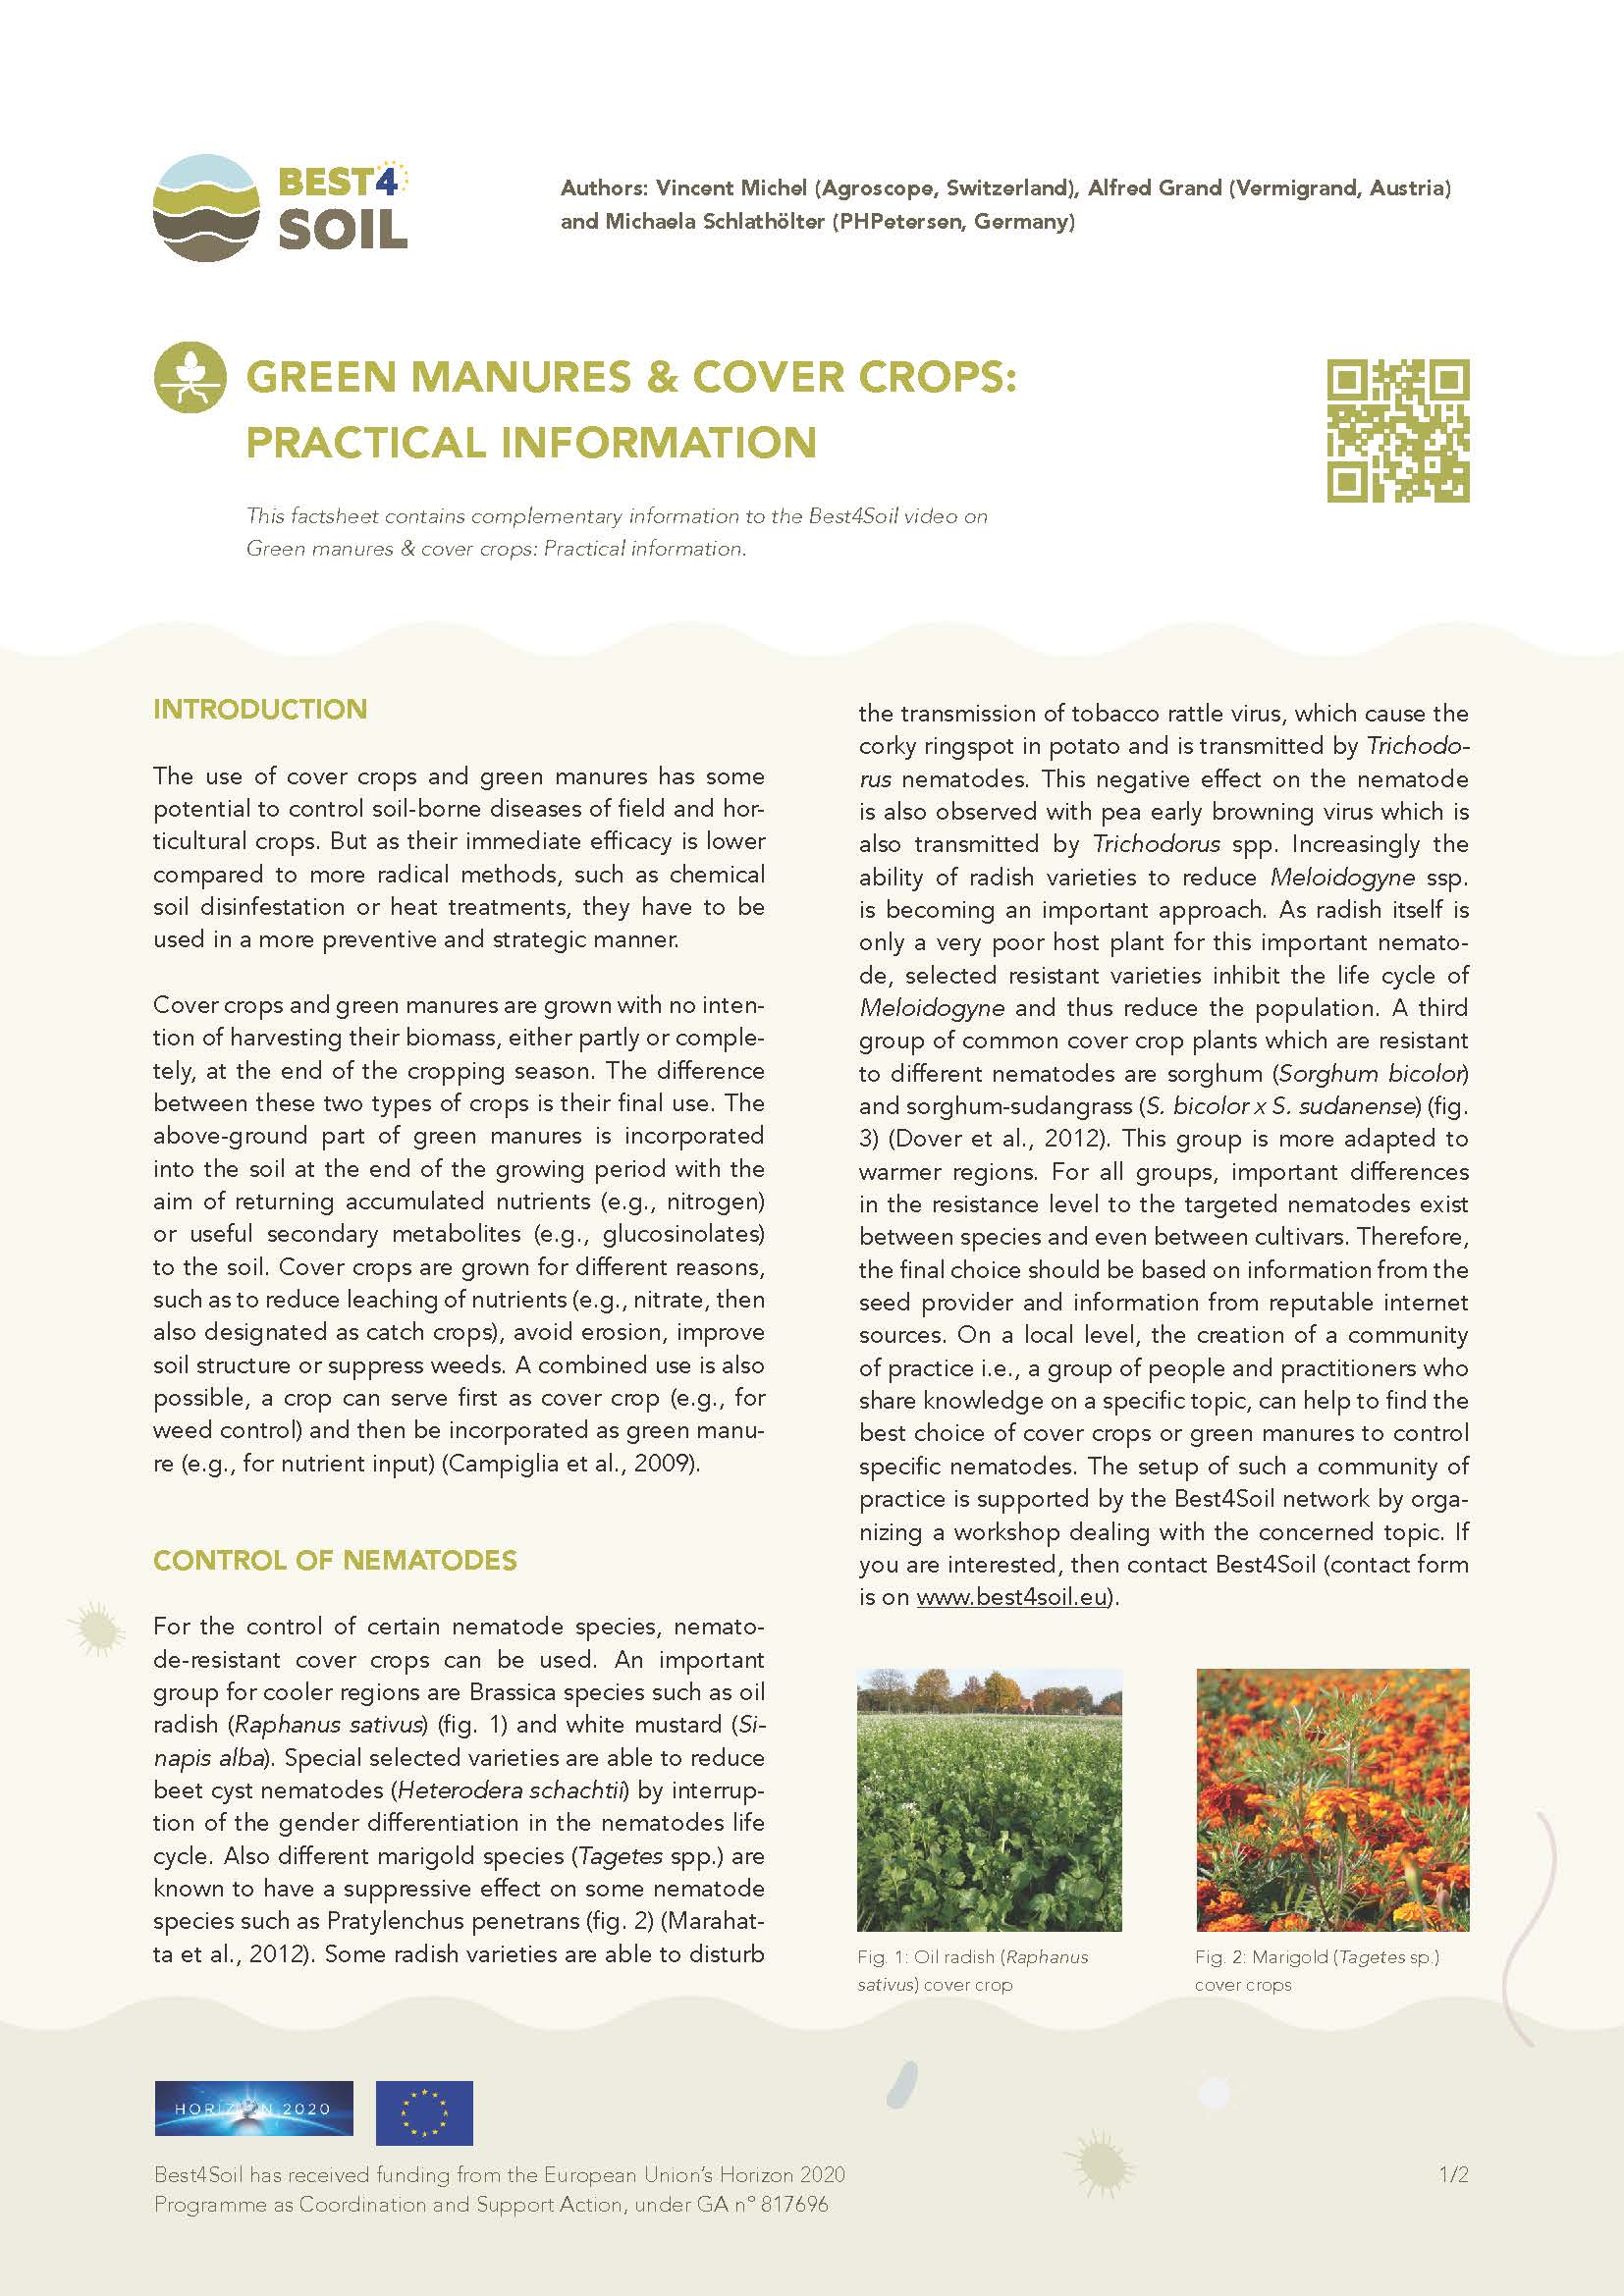 Engrais verts & cultures de couverture : informations pratiques (Fiche d'information Best4Soil)